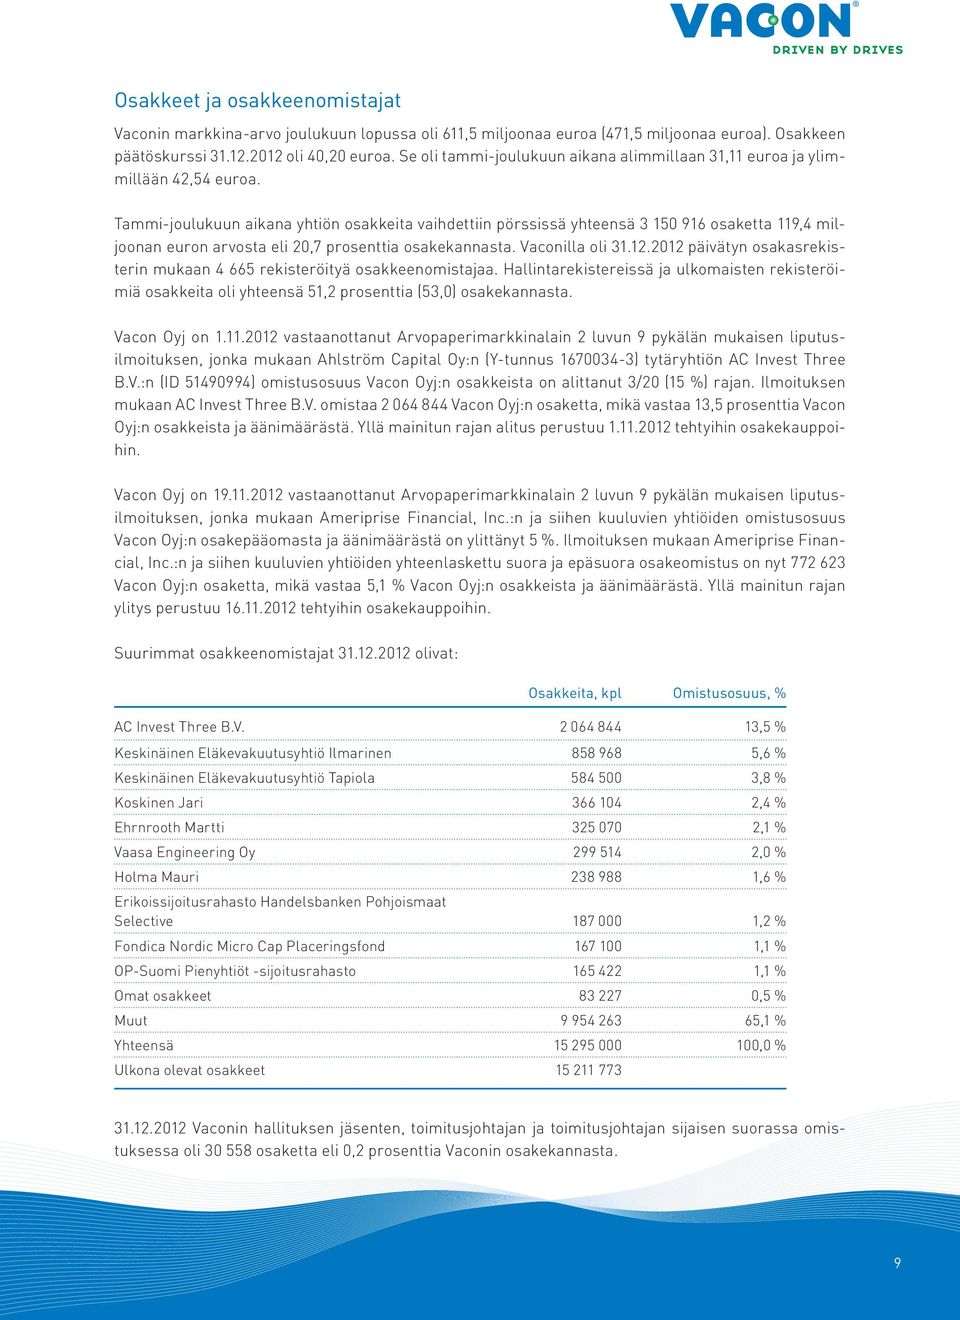 Tammi-joulukuun aikana yhtiön osakkeita vaihdettiin pörssissä yhteensä 3 150 916 osaketta 119,4 miljoonan euron arvosta eli 20,7 prosenttia osakekannasta. Vaconilla oli 31.12.